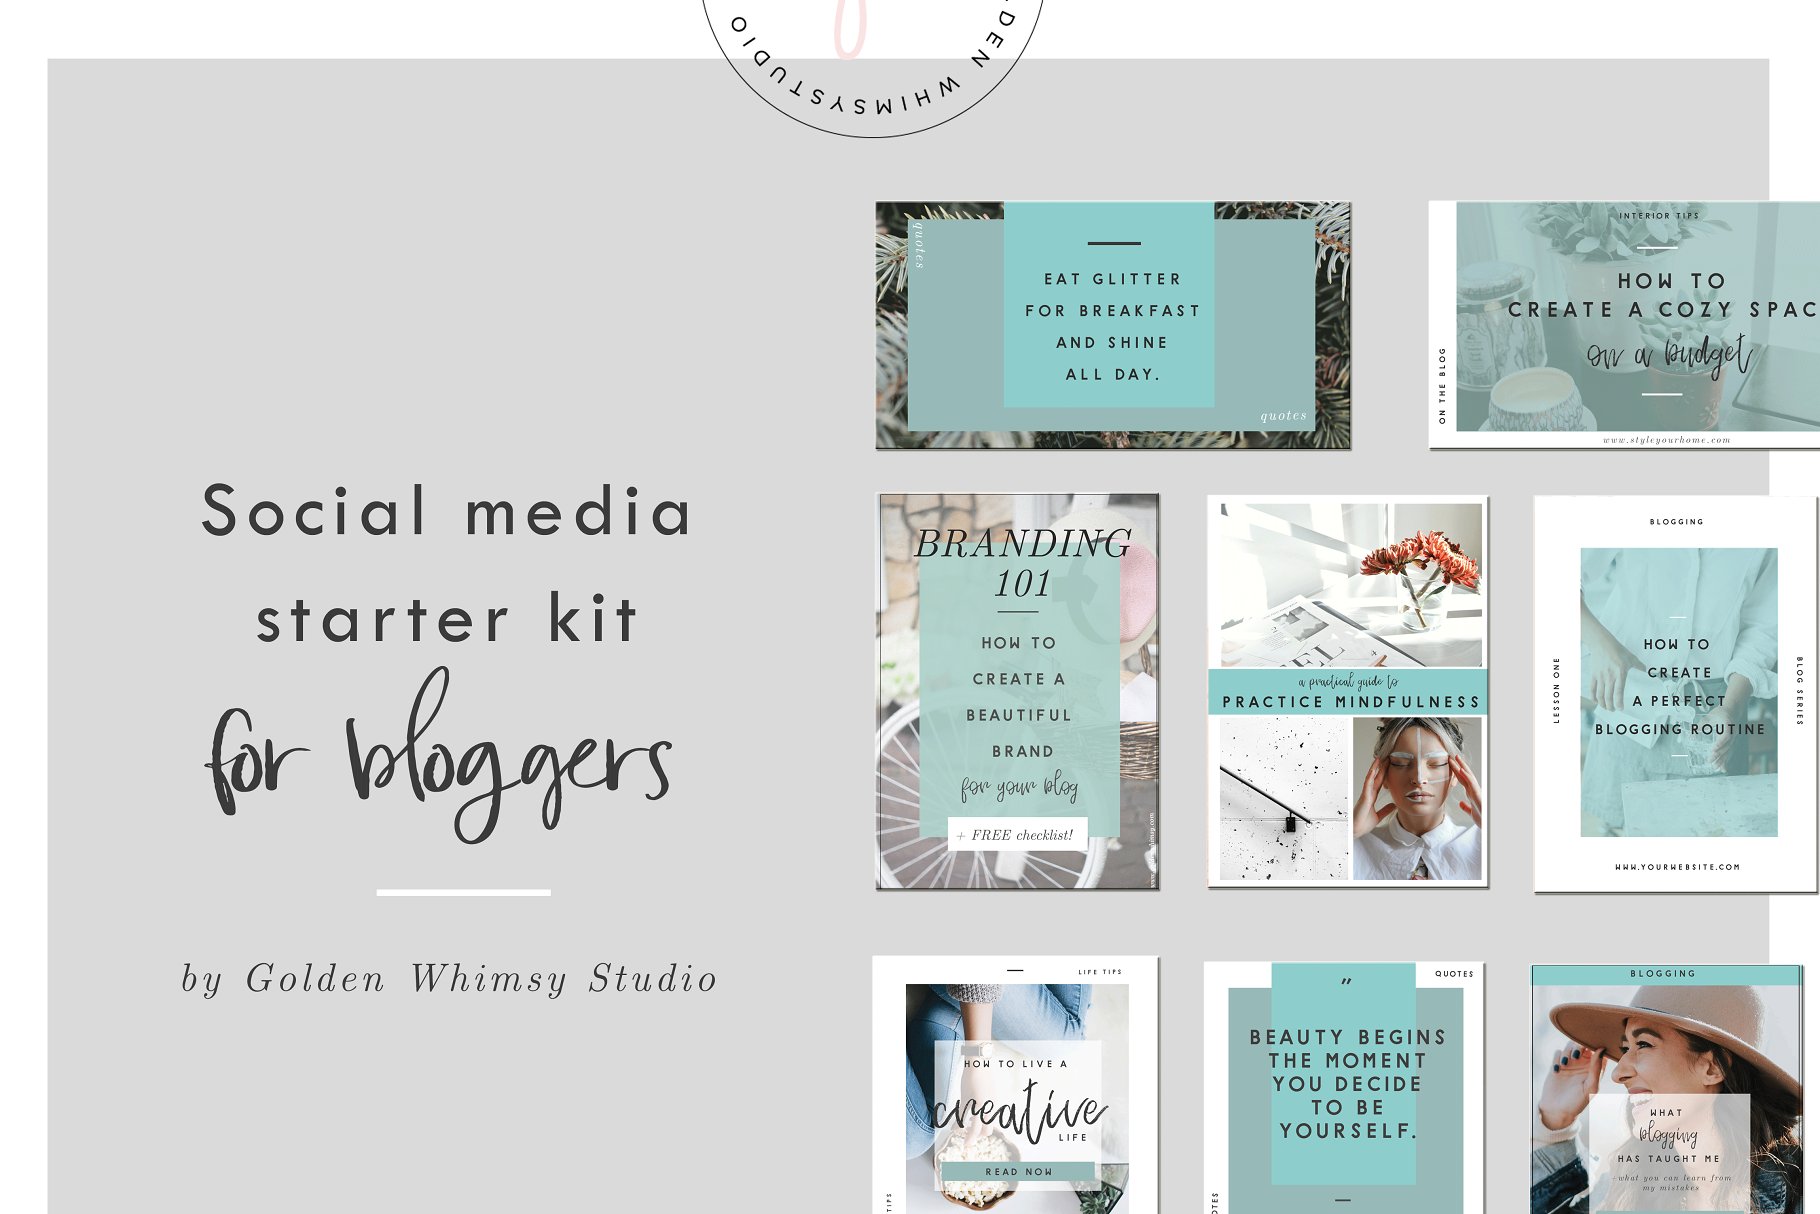 博主社交媒体配图插图设计模板第一素材精选 Blogger’s social media starter kit插图